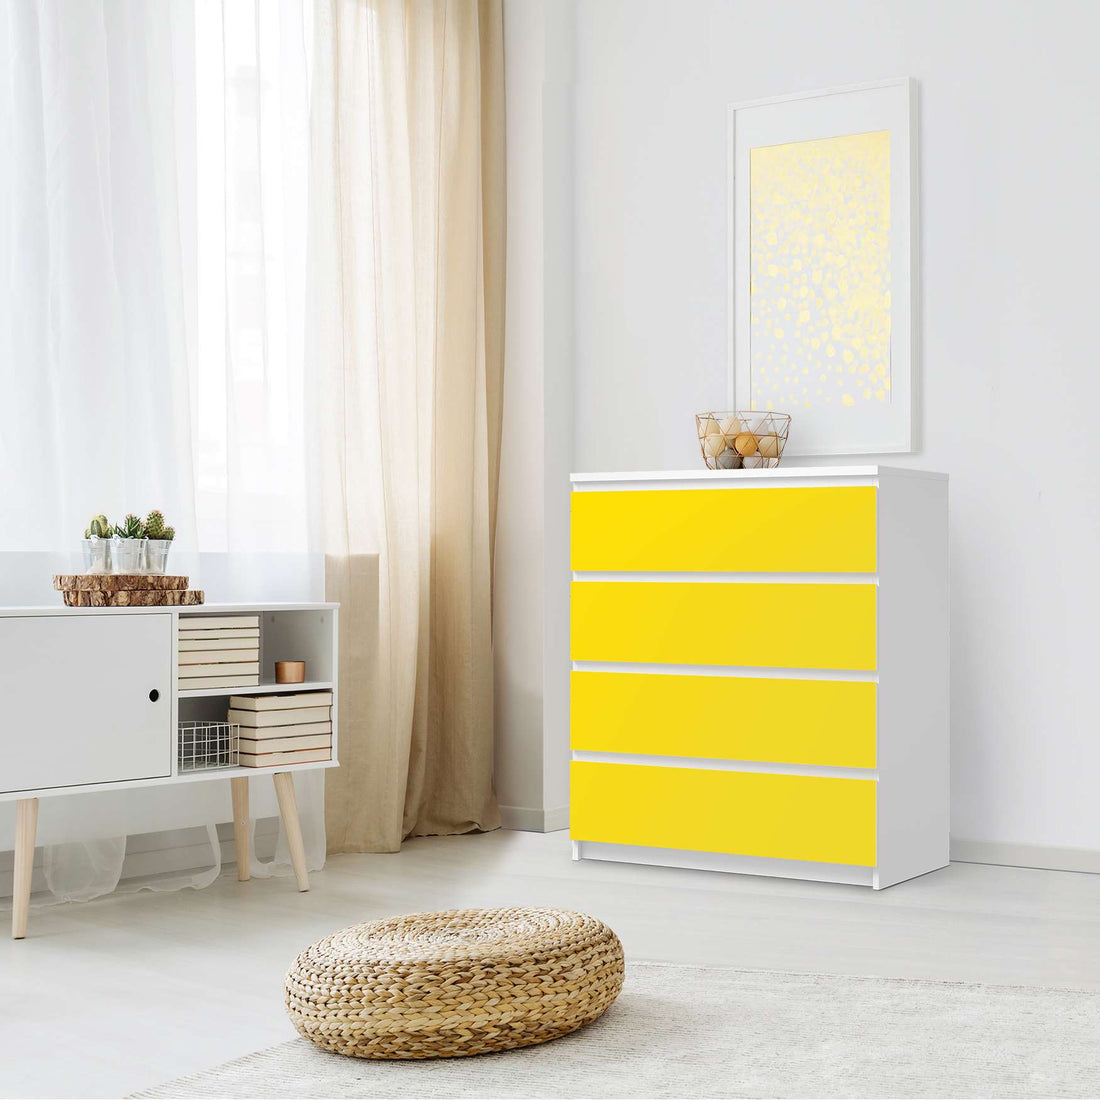 Folie für Möbel Gelb Dark - IKEA Malm Kommode 4 Schubladen - Schlafzimmer